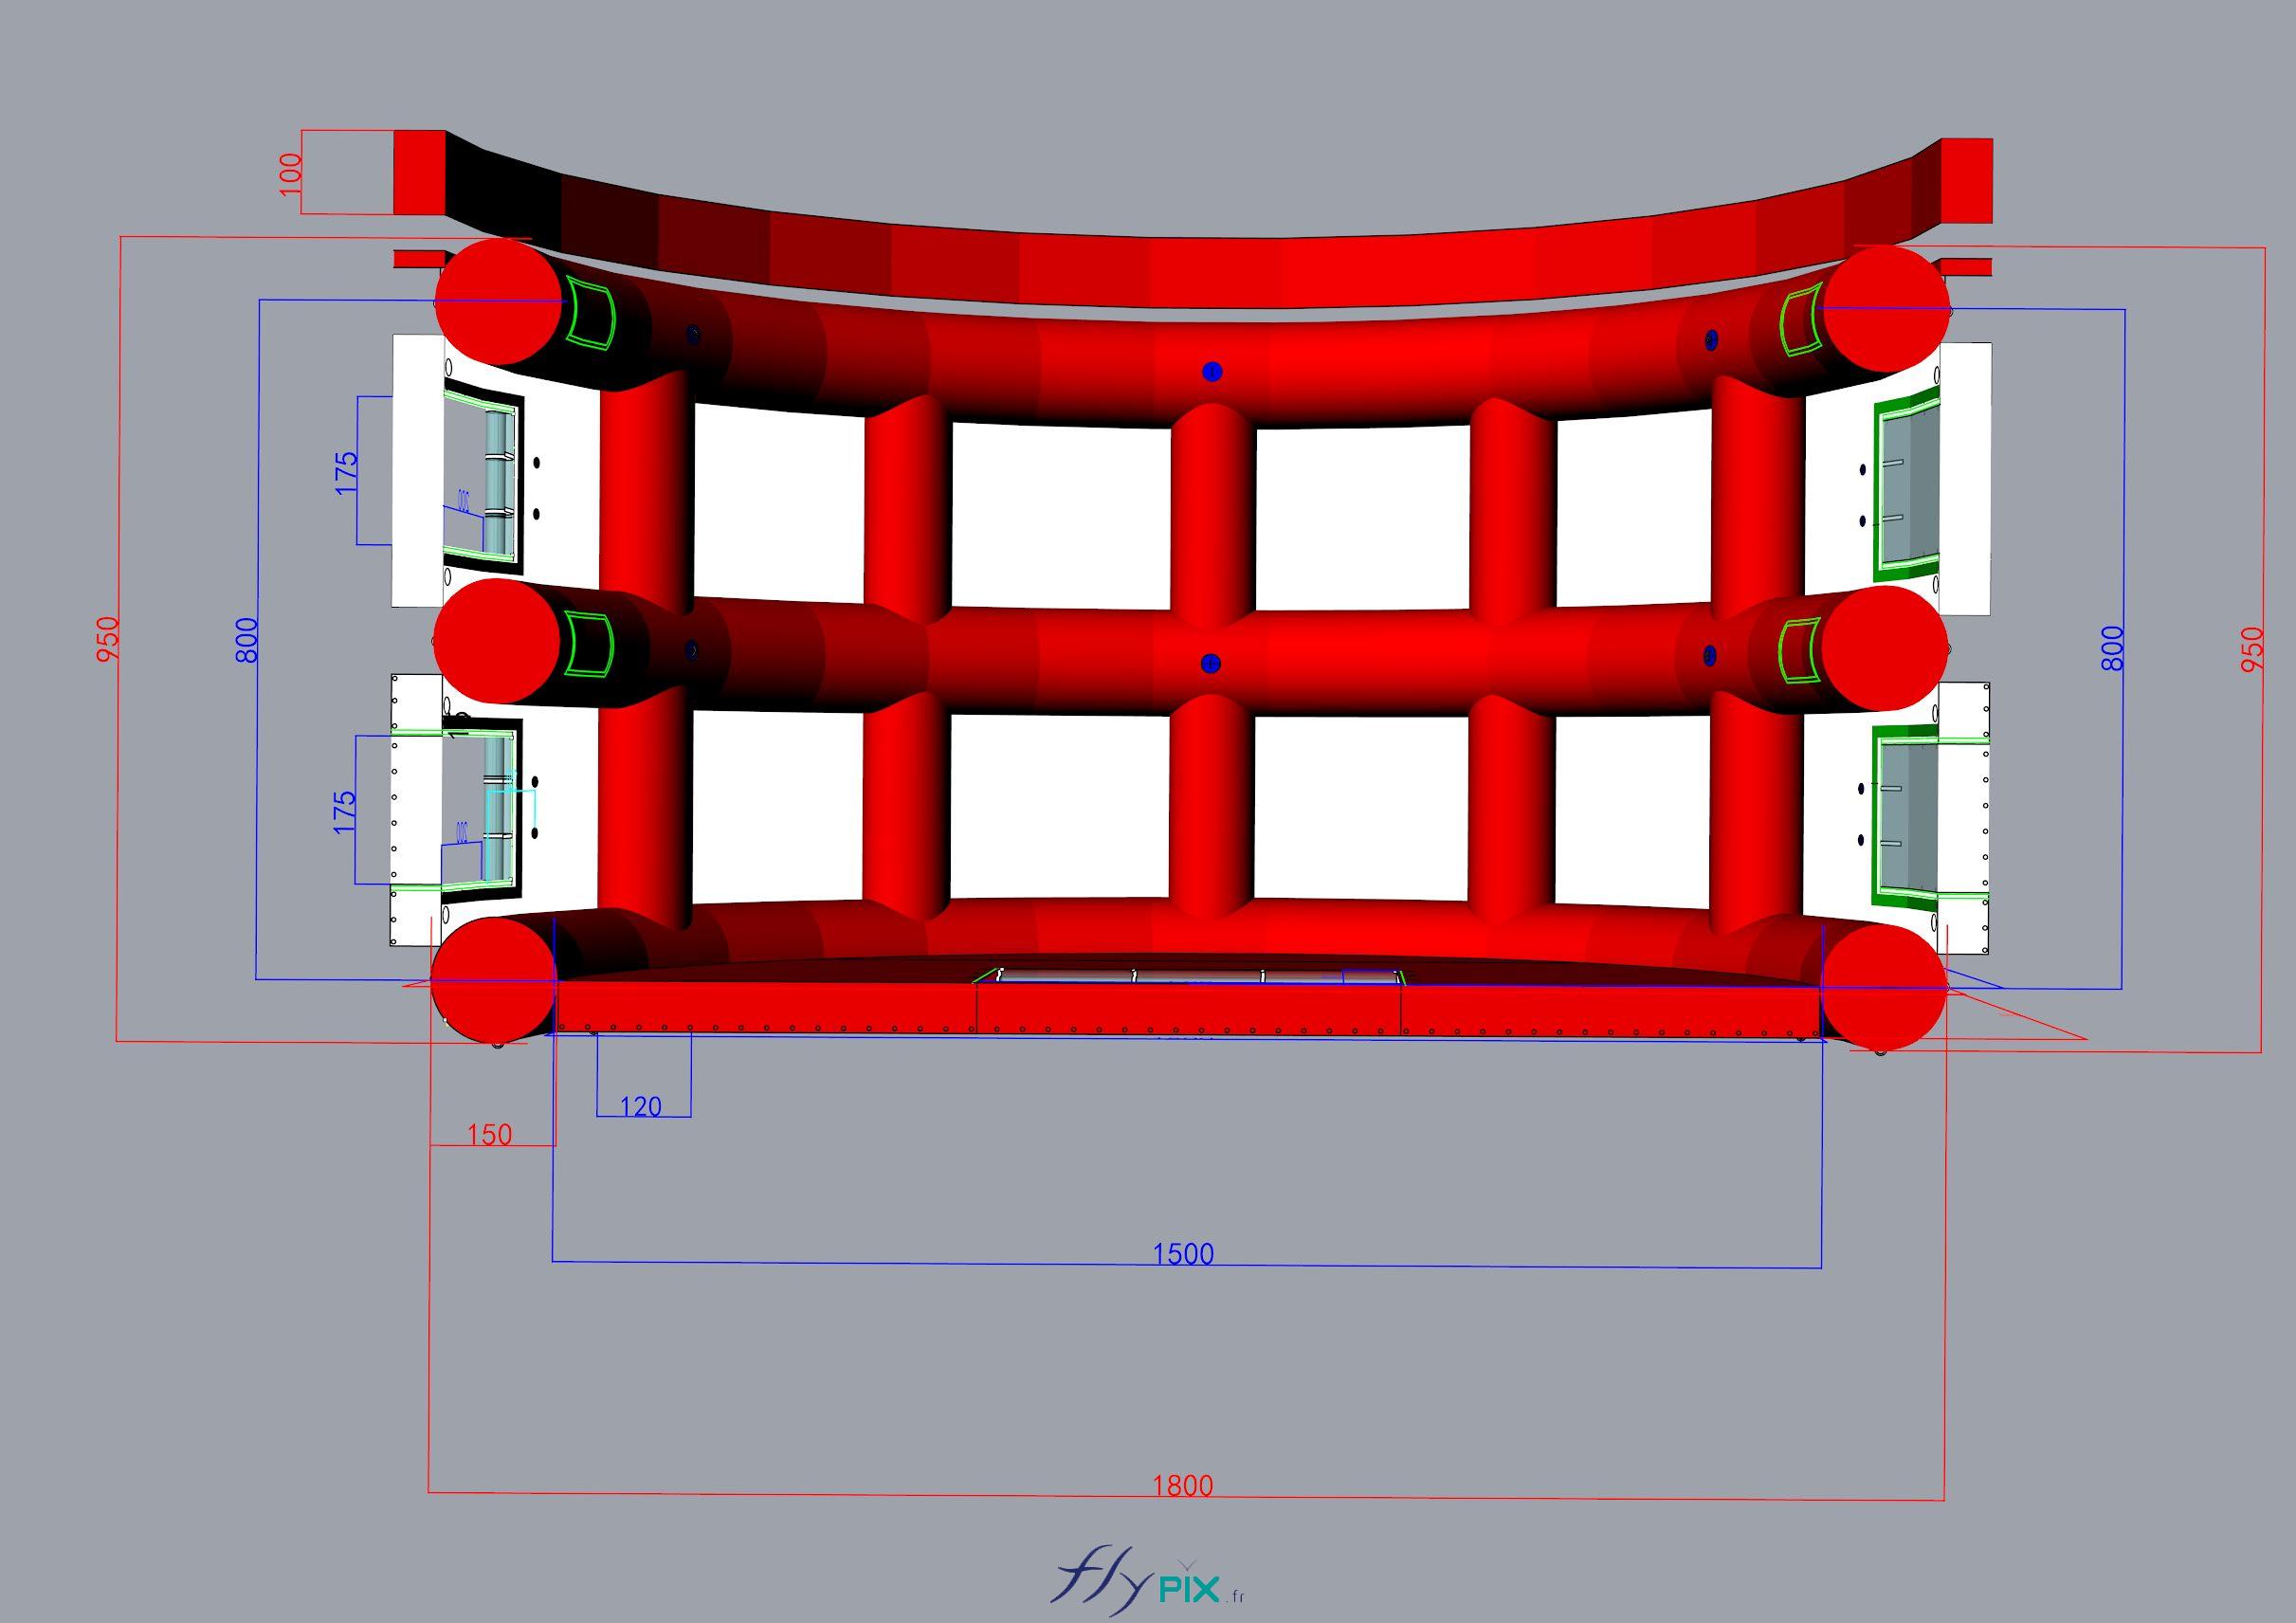 FLYPIX Etude modelisation 3D infographie conception tente reception public air captif tunnel pompe regulateur pression enveloppe PVC 06mm simple peau UNION BORDEAUX BELGES 5